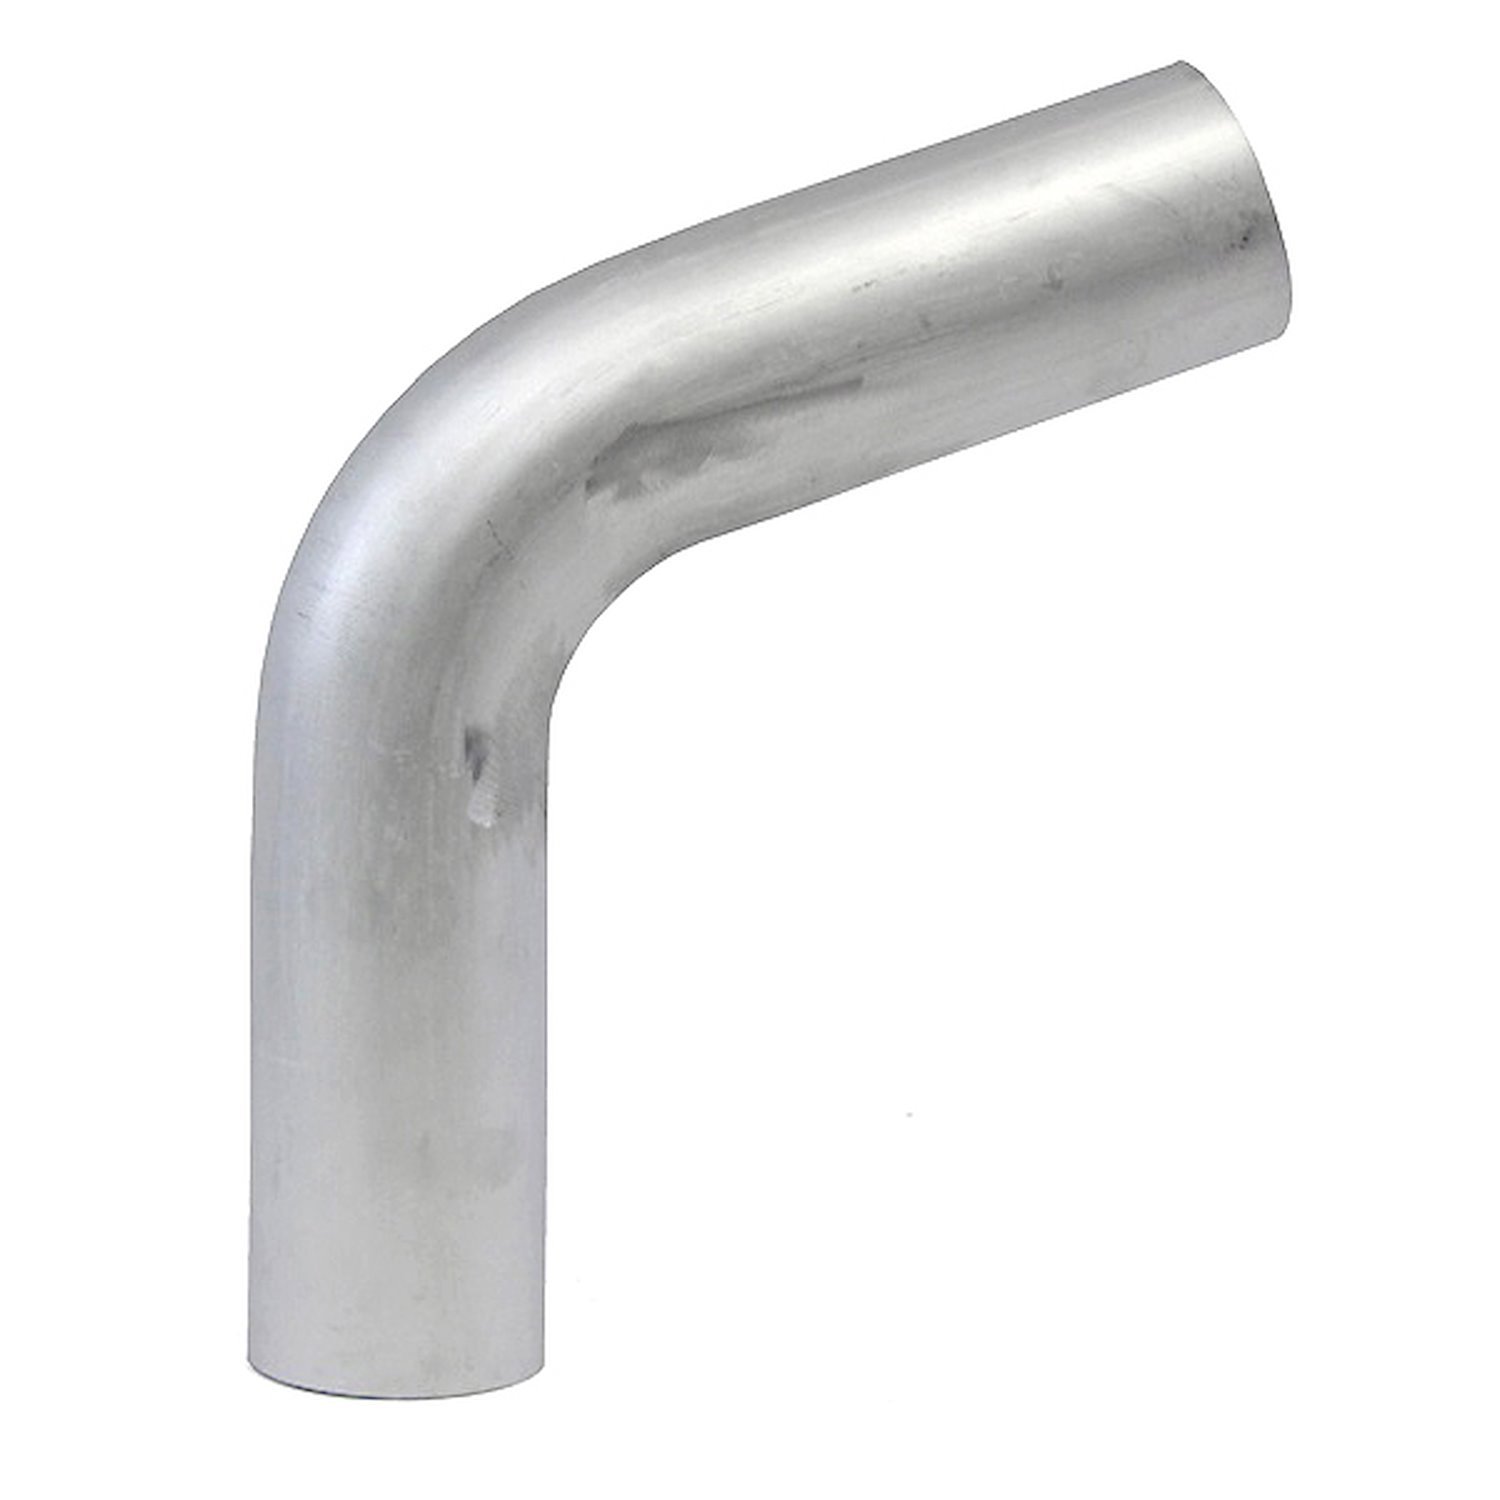 AT70-450-CLR-6 Aluminum Elbow Tube, 6061 Aluminum, 70-Degree Bend Elbow Tubing, 4-1/2 in. OD, Large Radius, 6 in. CLR